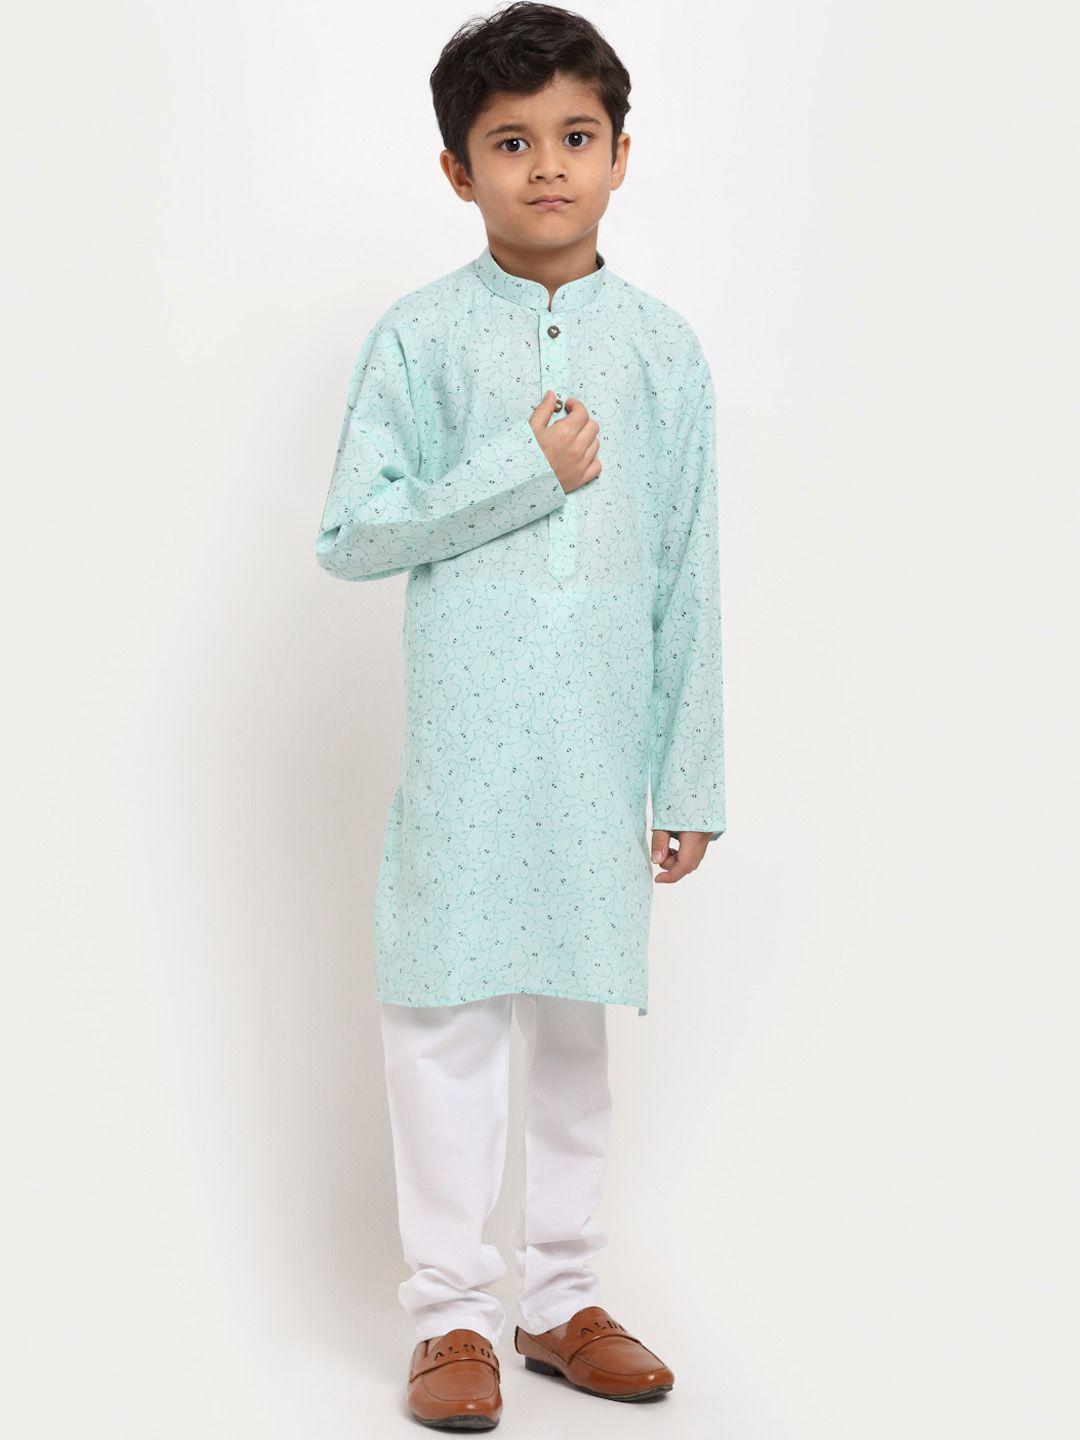 kraft-india-boys-floral-printed-pure-cotton-kurta-with-pyjamas